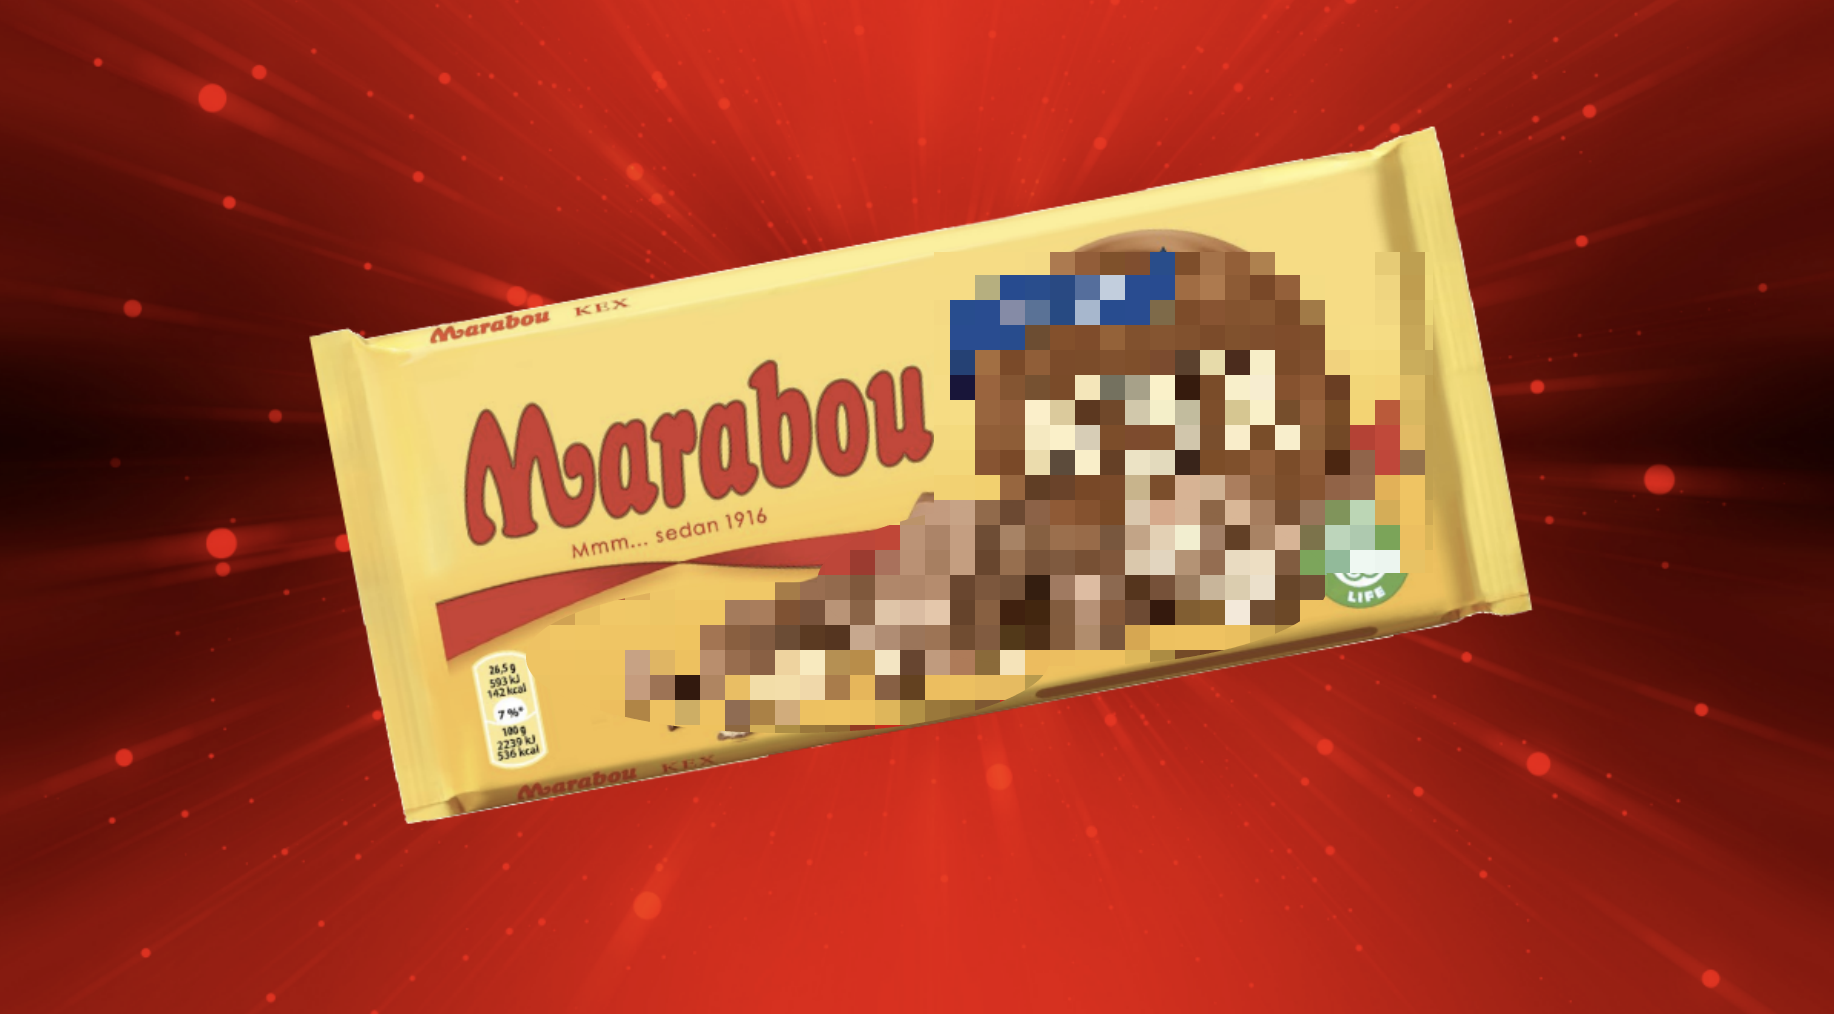 marabou, Marabou ny smak